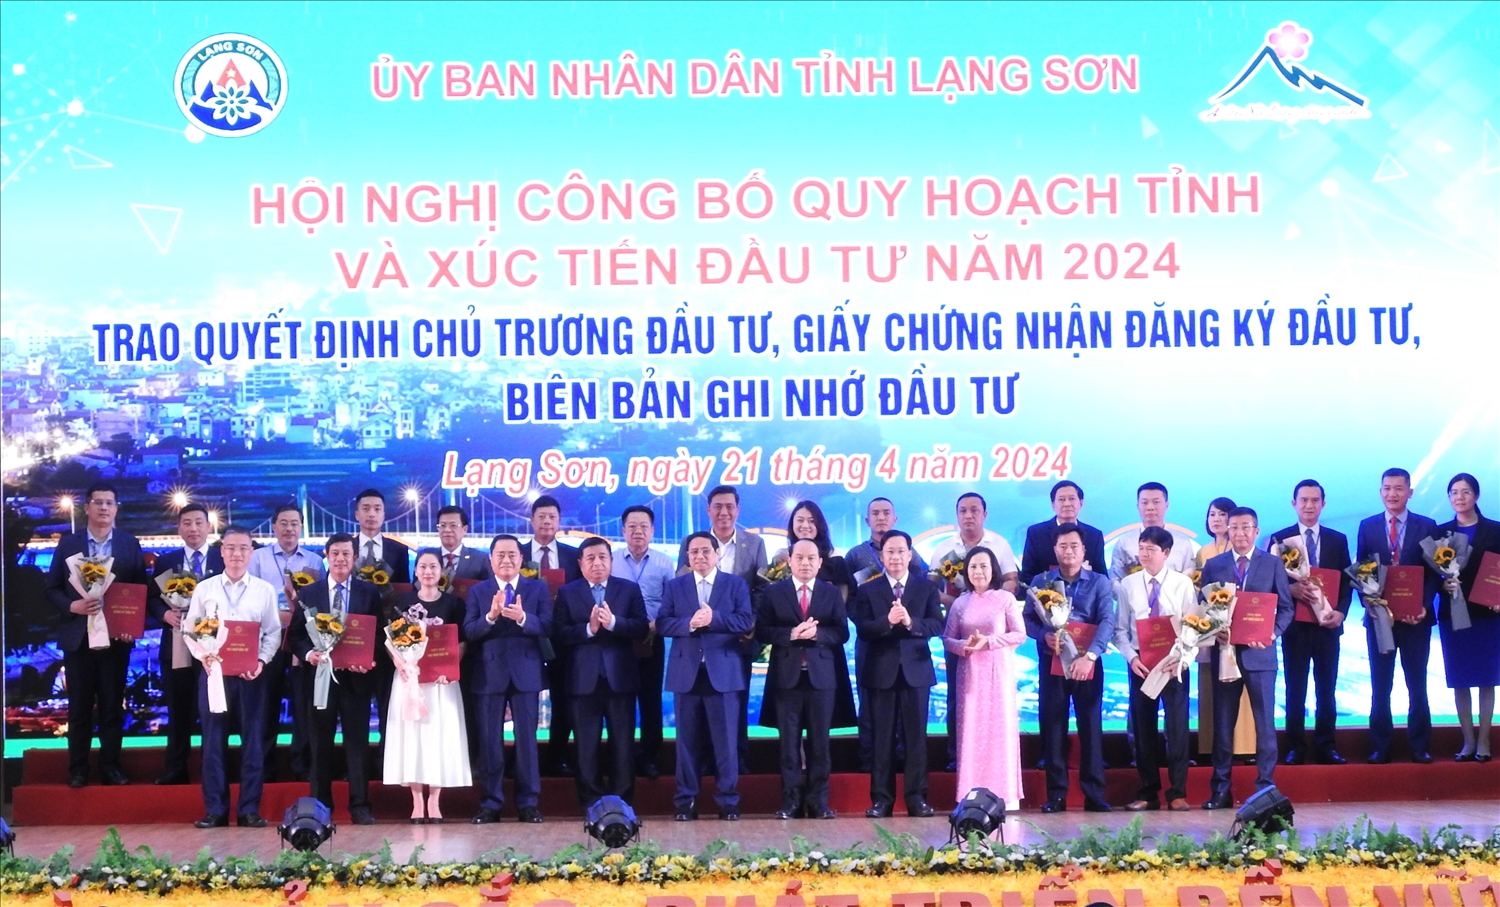 Các đại biểu tham dự Hội nghị chụp ảnh lưu niệm với các tập đoàn, doanh nghiệp nhận quyết định chủ trương đầu tư, giấy chứng nhận đăng kí đầu tư, biên bản ghi nhớ đầu tư của UBND tỉnh Lạng Sơn